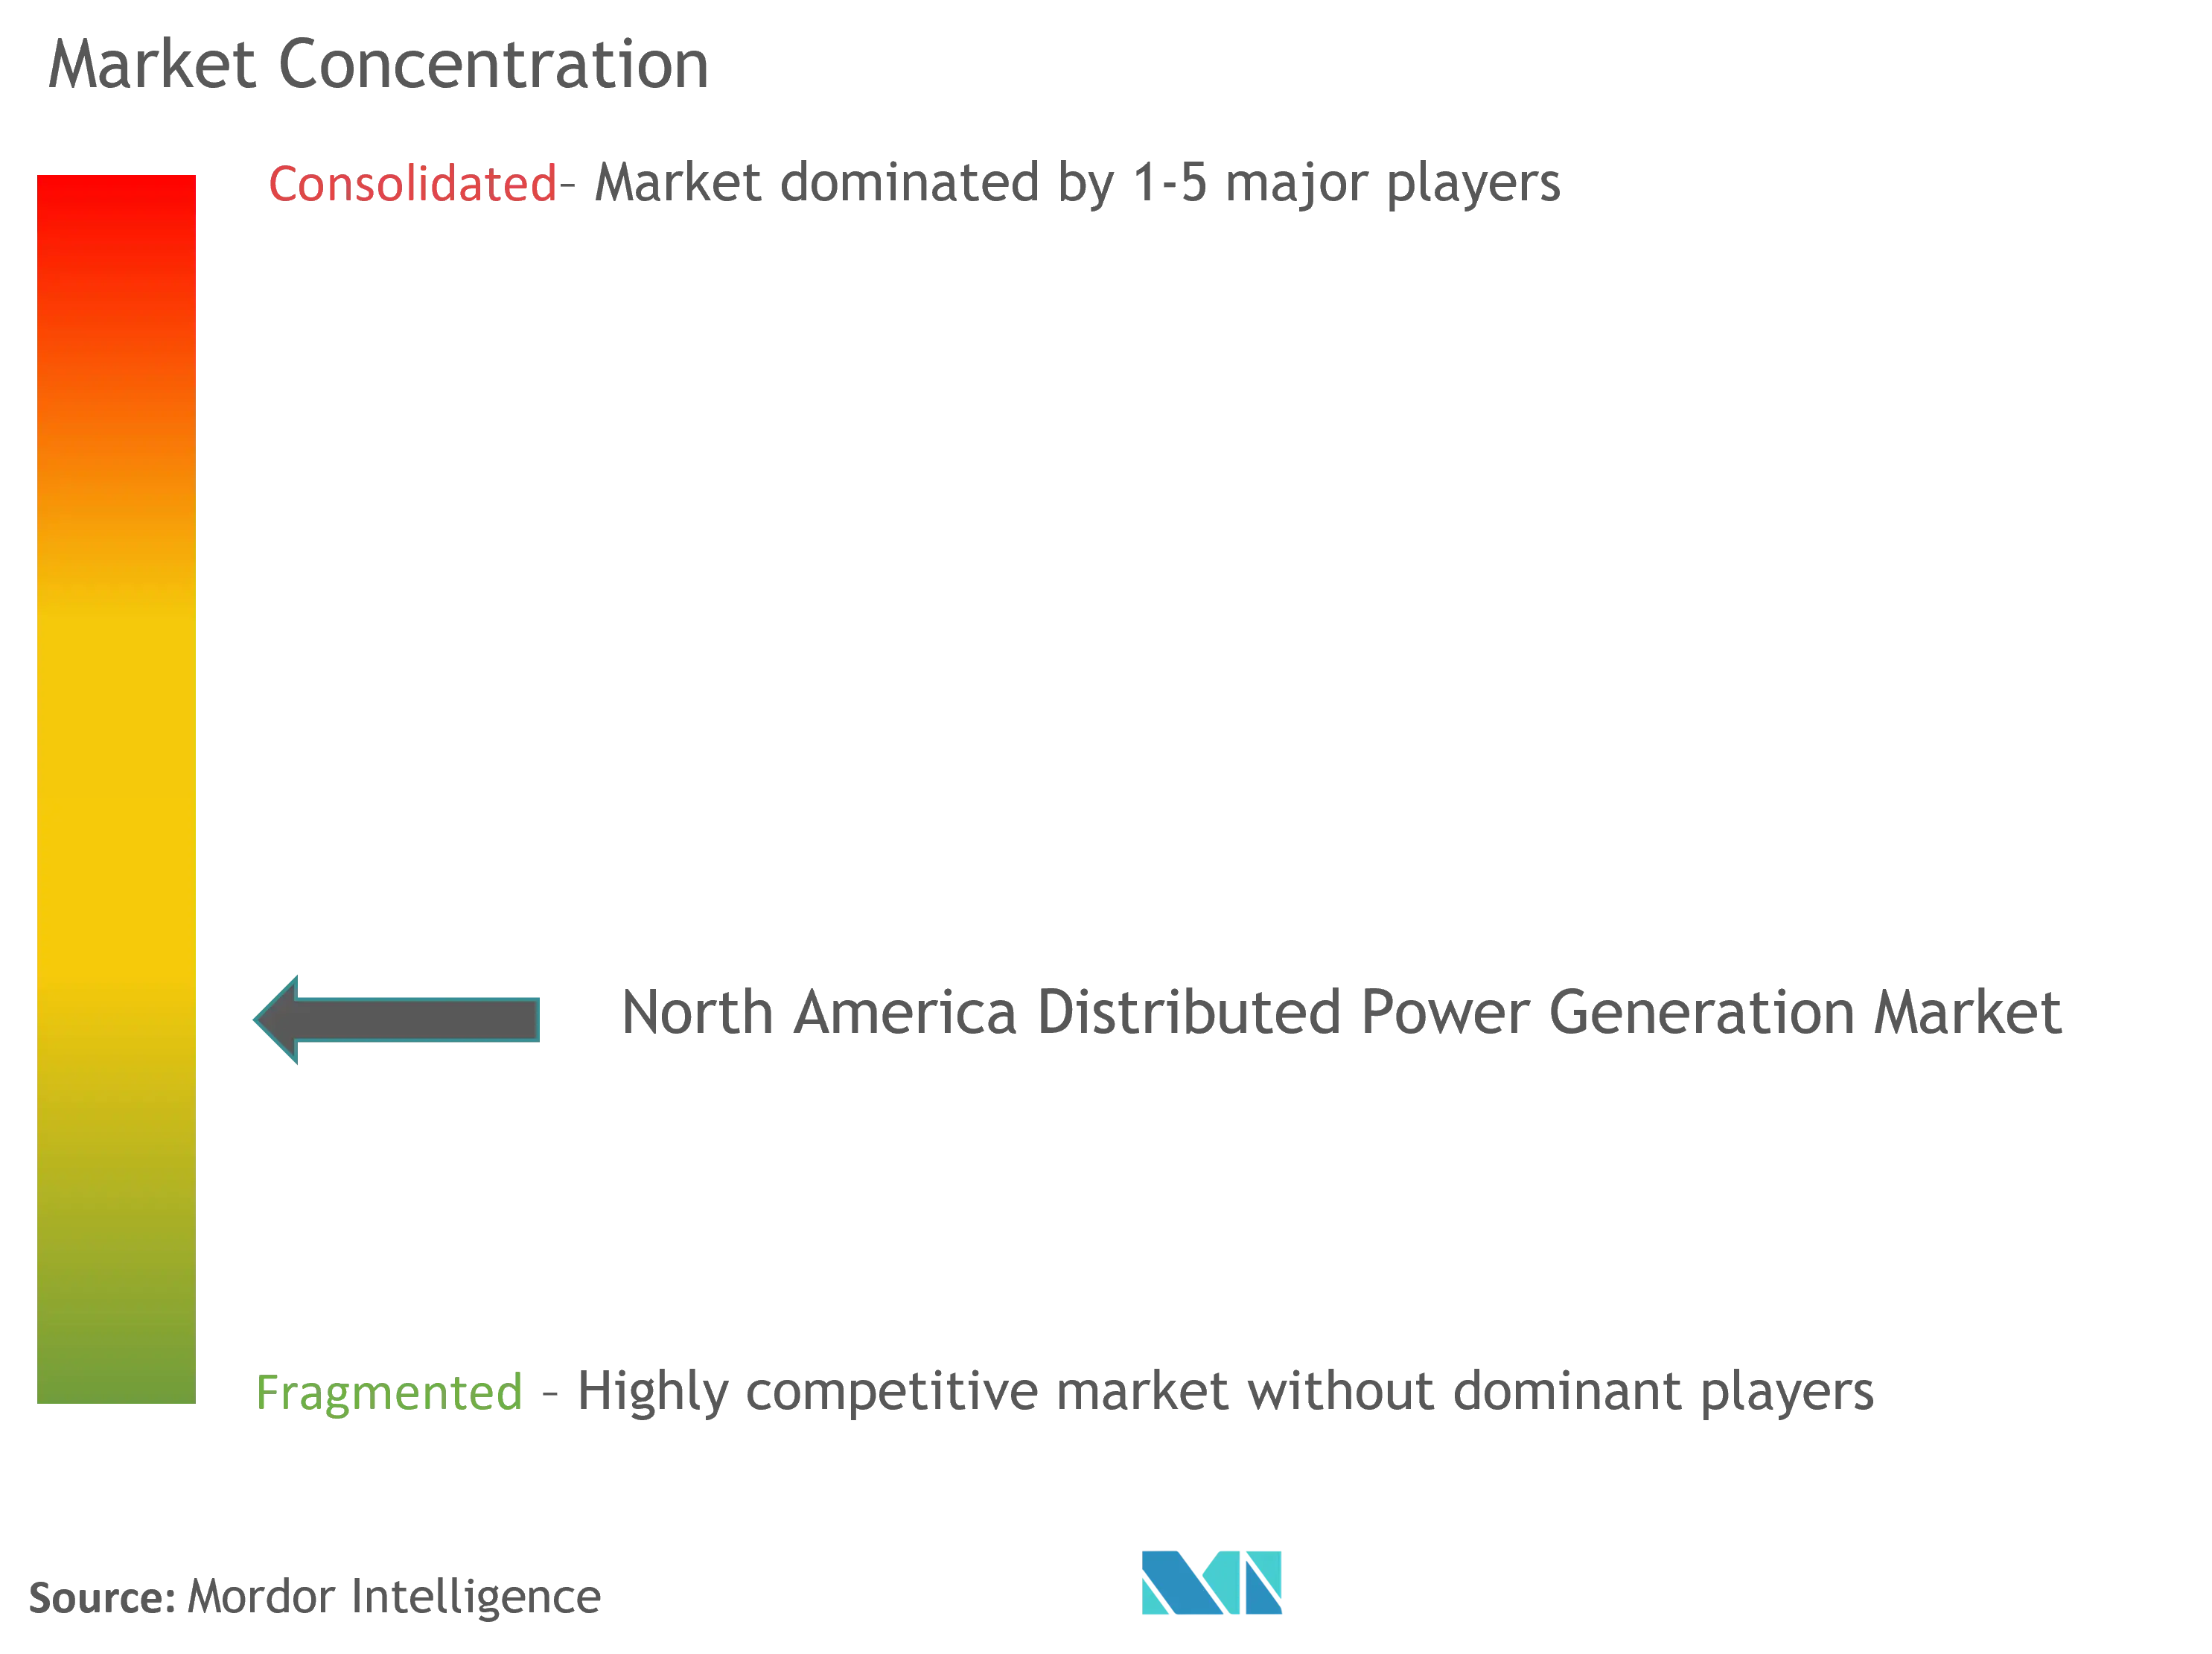 北美分布式发电市场集中度